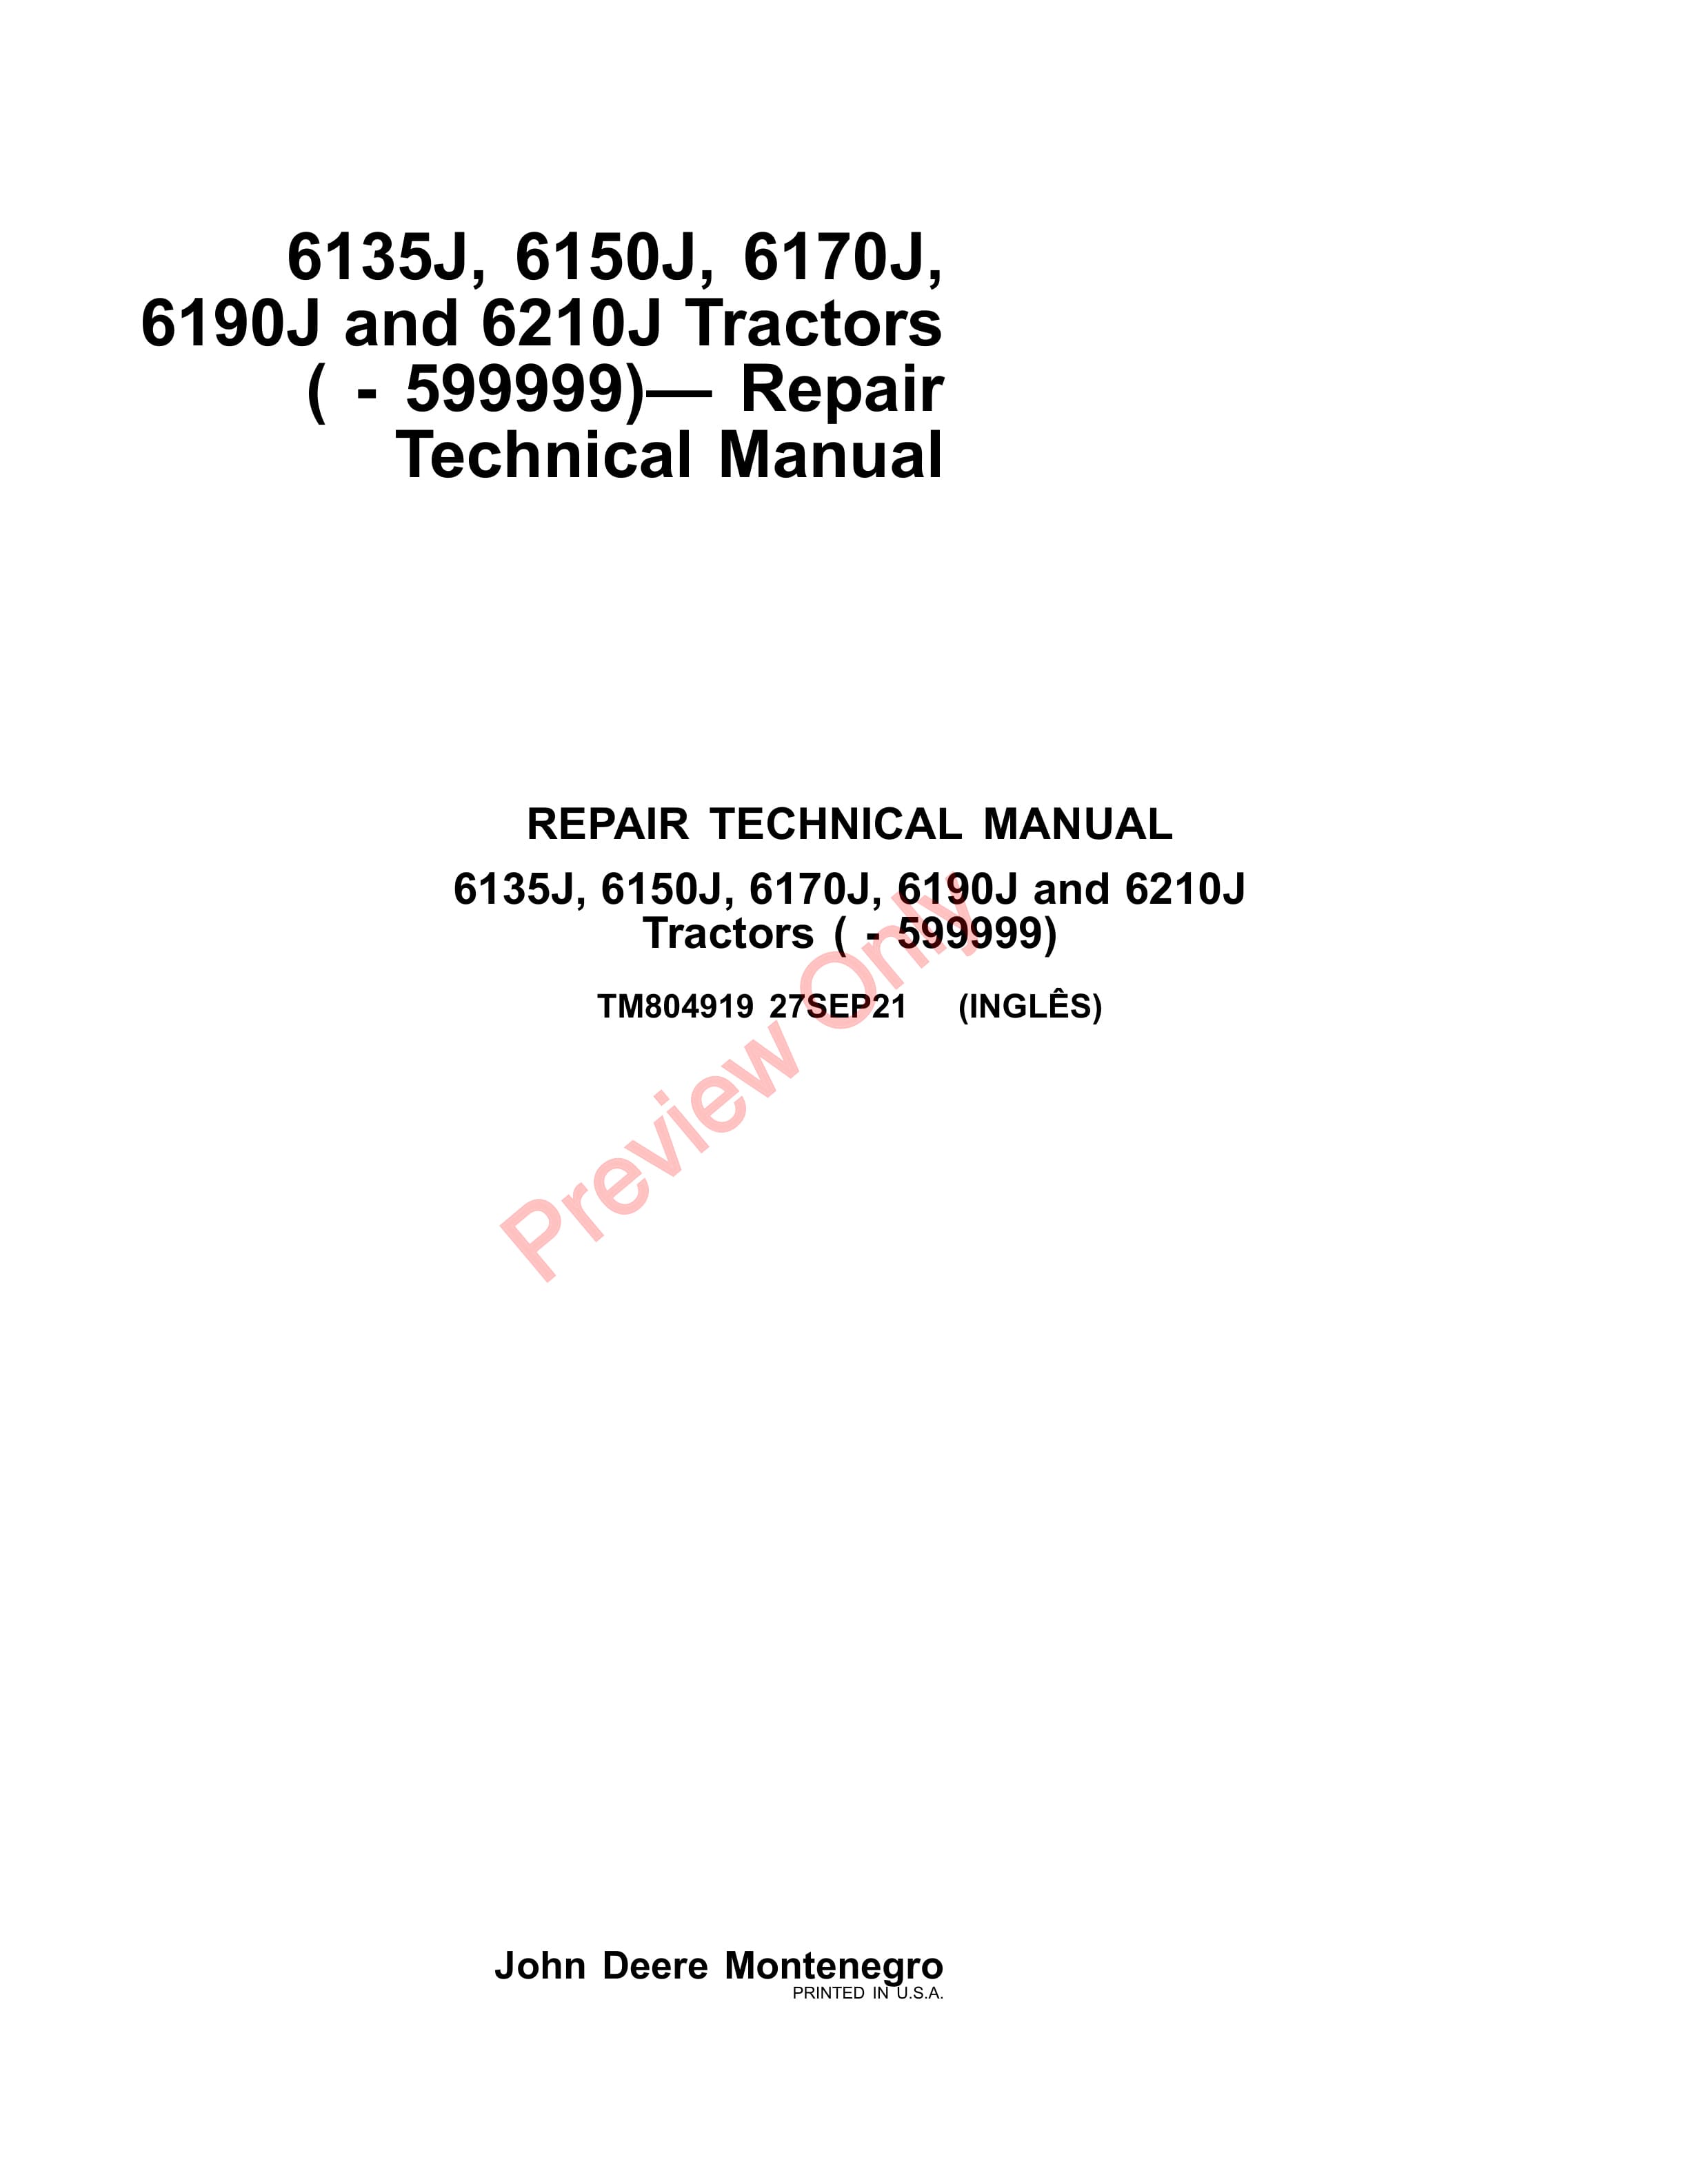 John Deere 6135J 6150J 6170J 6190J and 6210J Tractors 599999 Repair Technical Manual TM804919 27SEP21 1